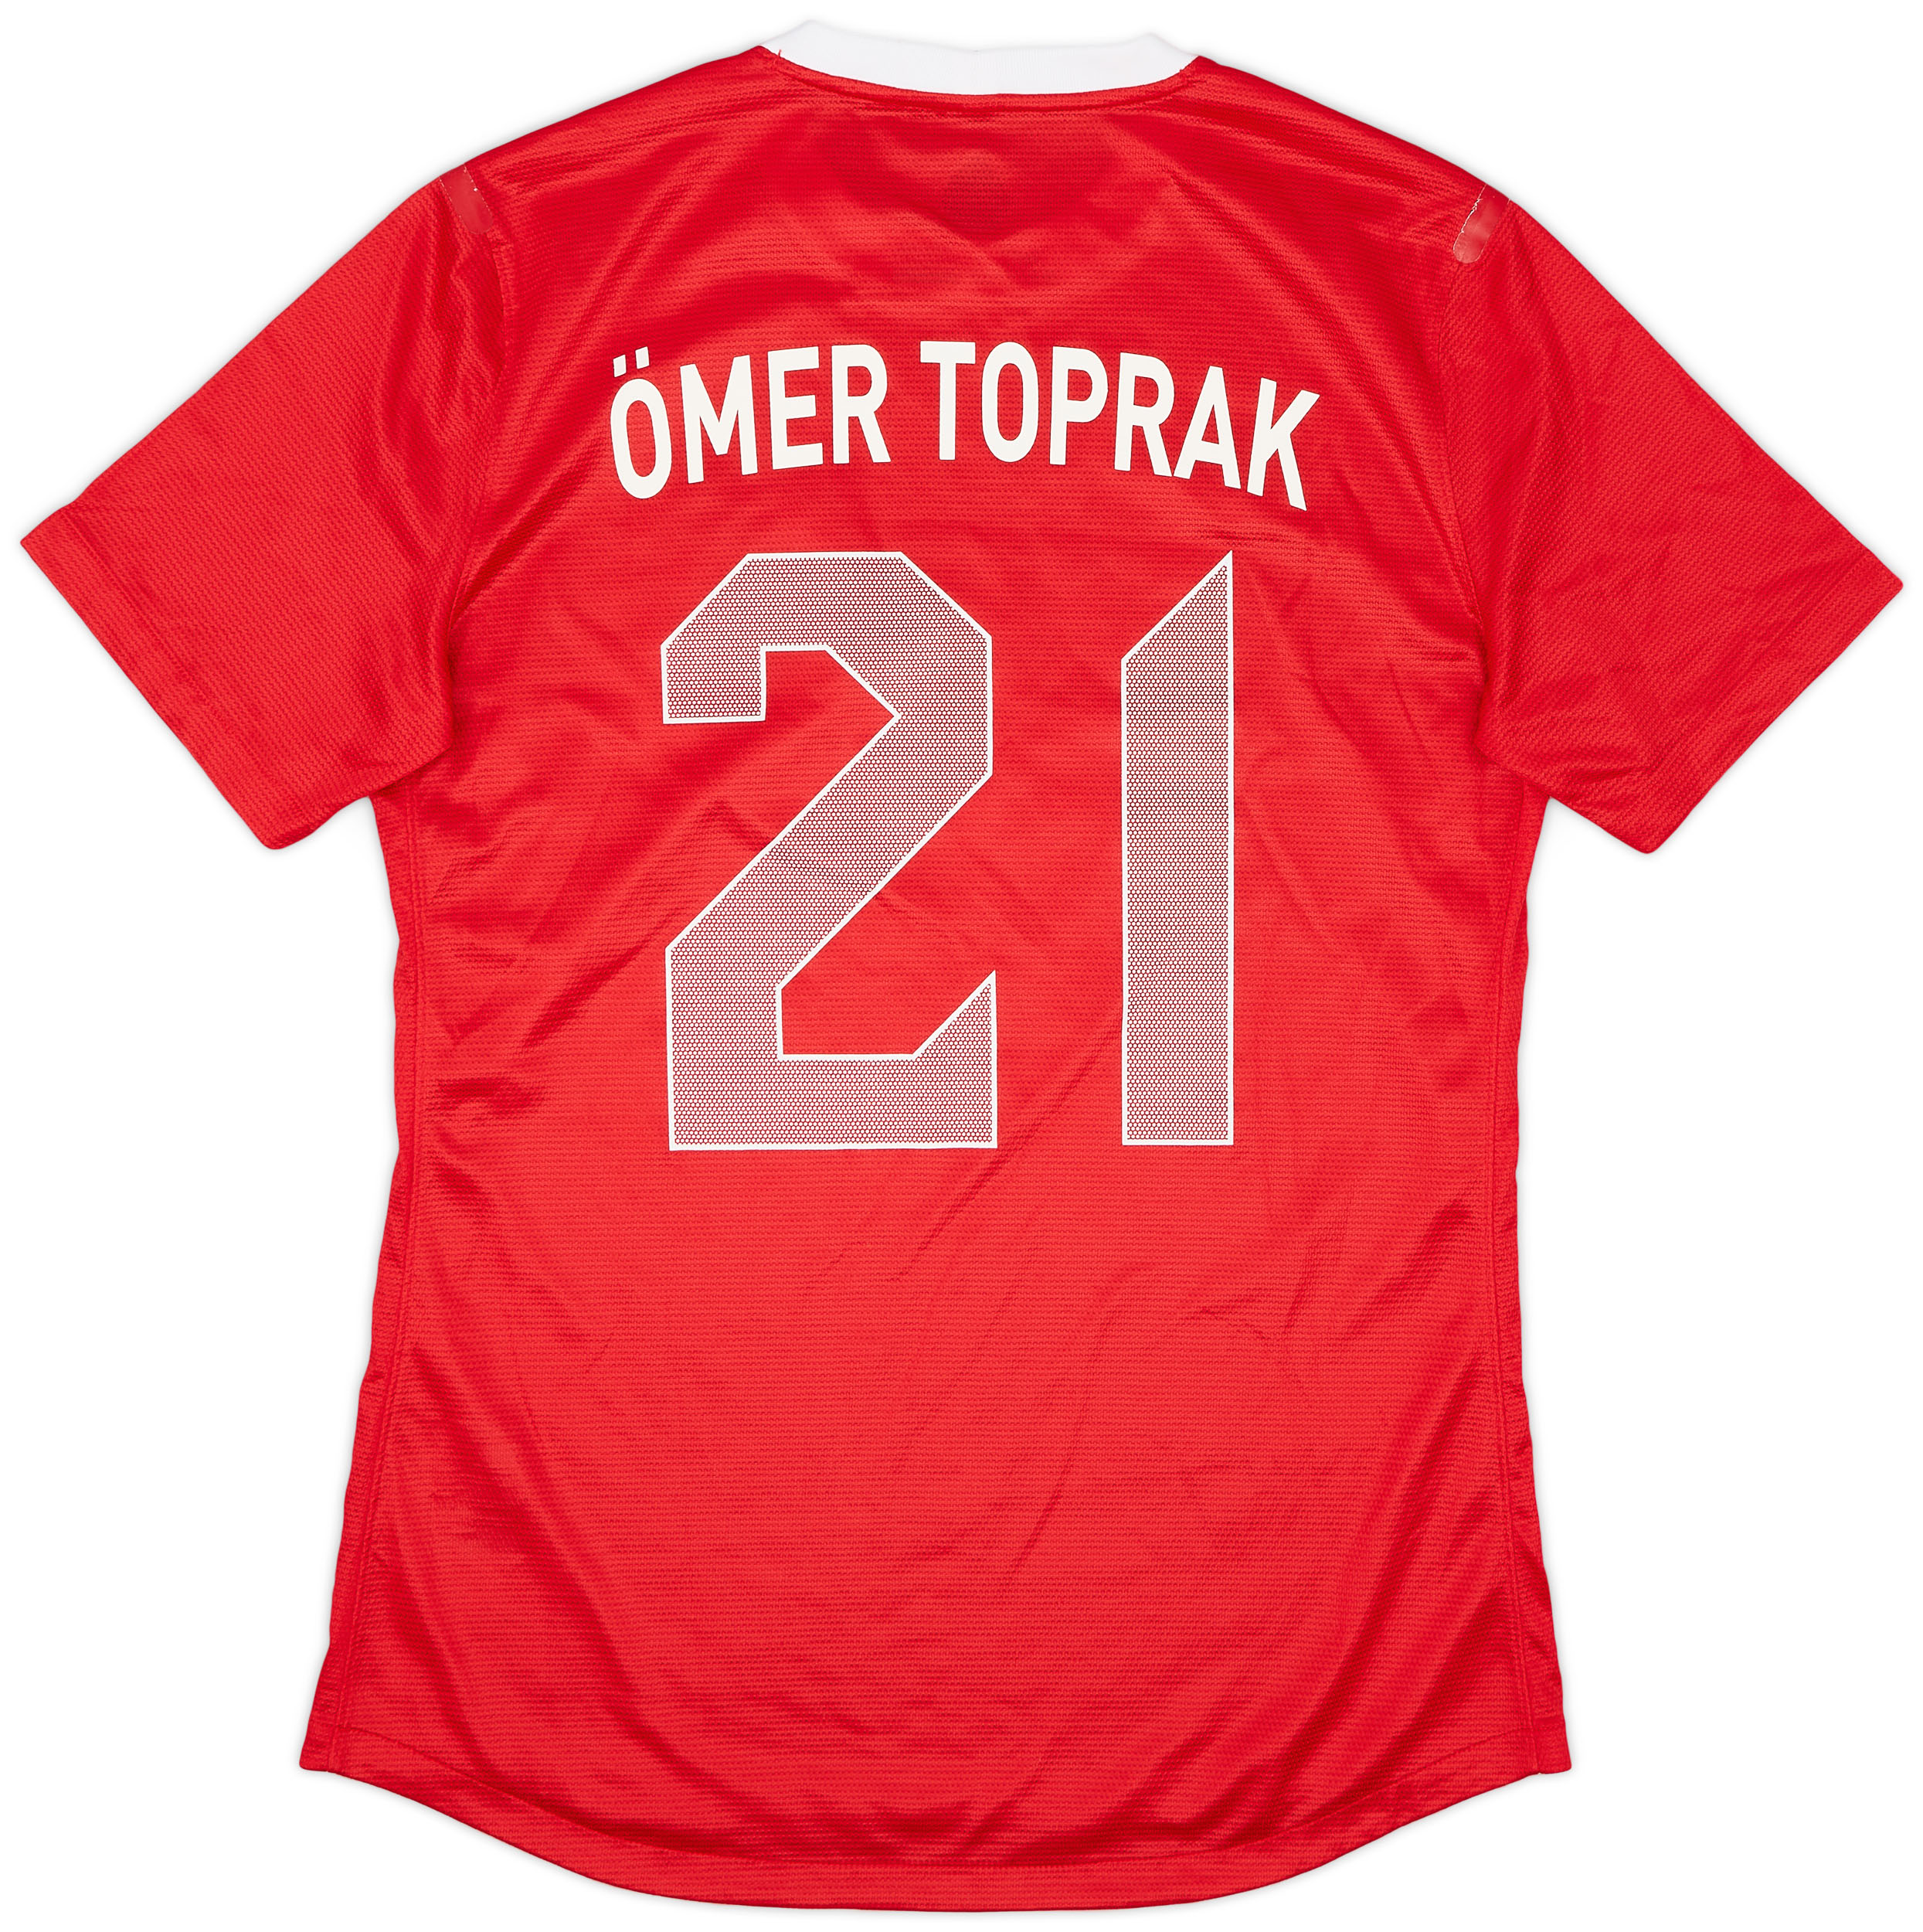 2012-14 Turkey Player Issue Home Shirt Omer Toprak #21 - 9/10 - ()